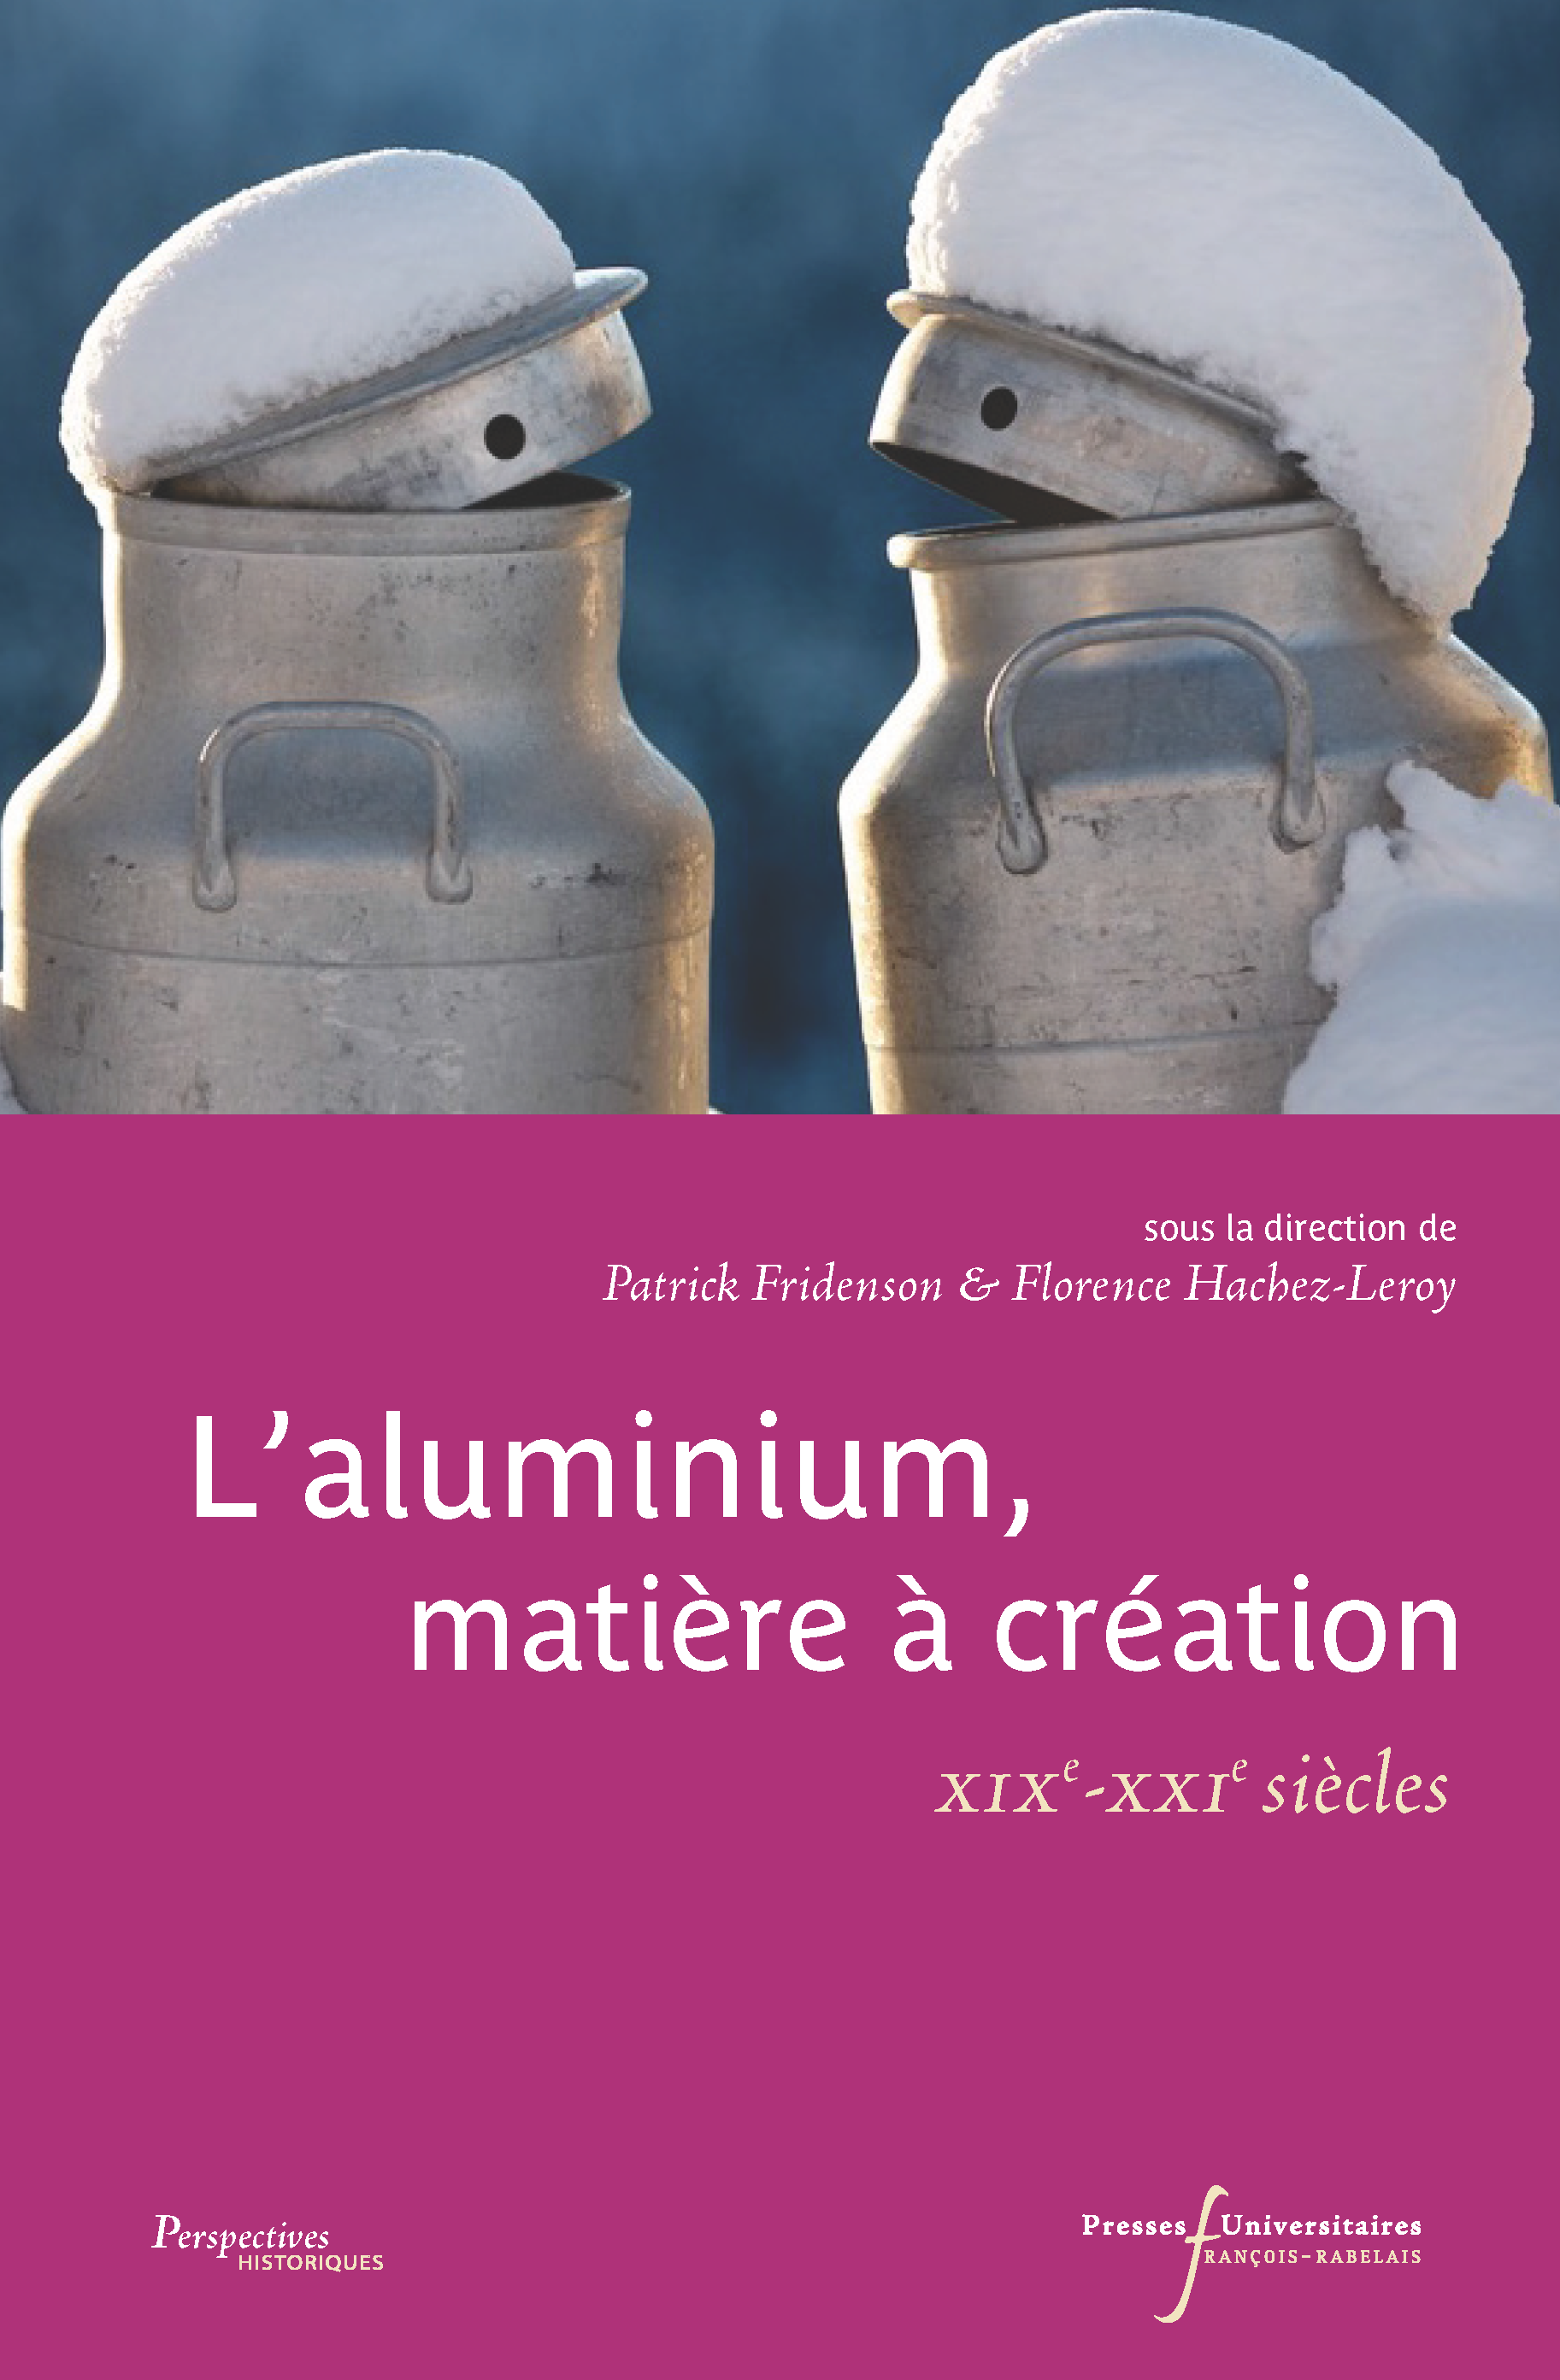 L’aluminium, matière à création XIXe-XXIe siècles